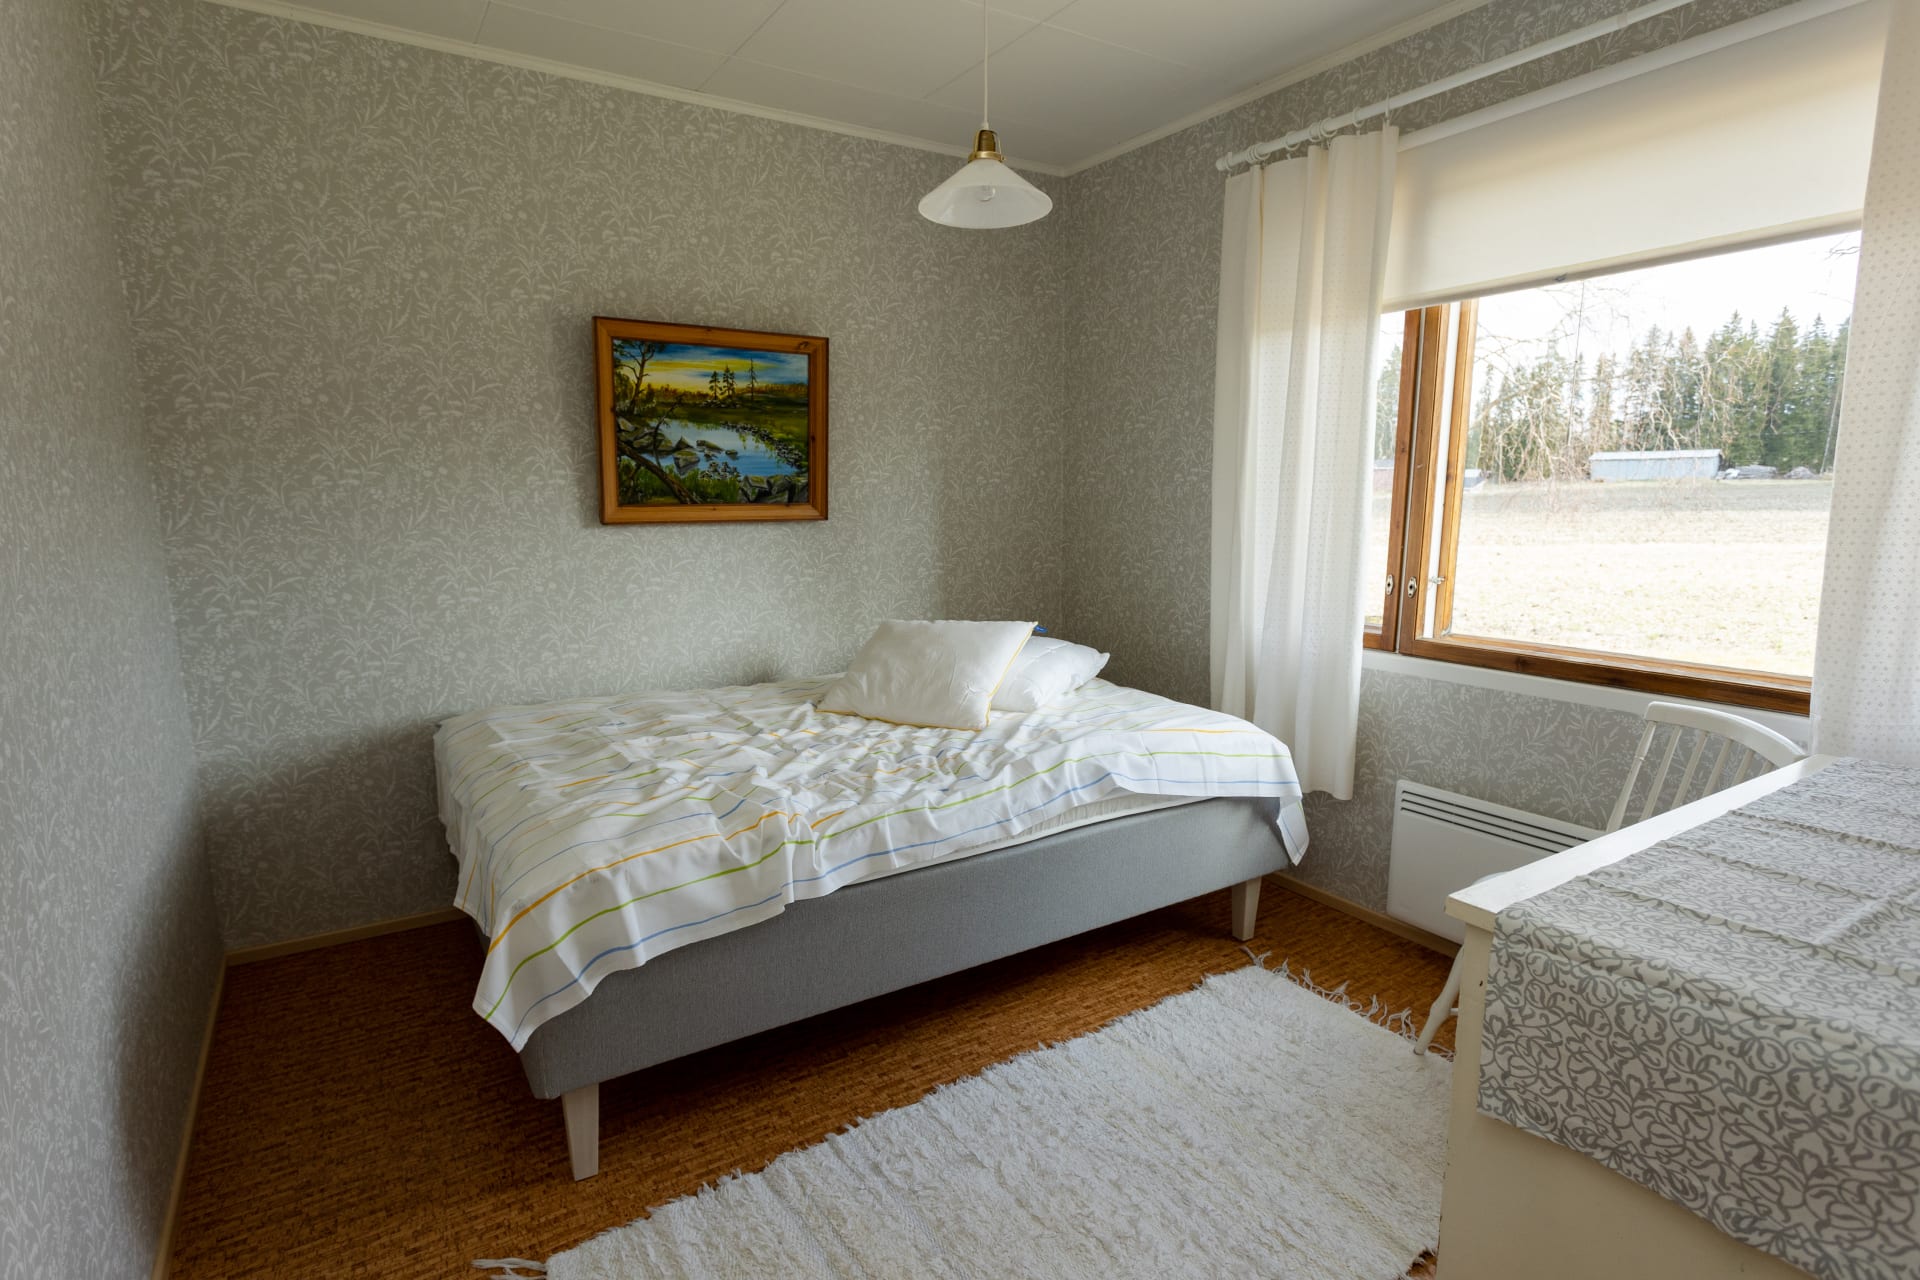 Makuuhuone 2 - 140 cm leveä sänky